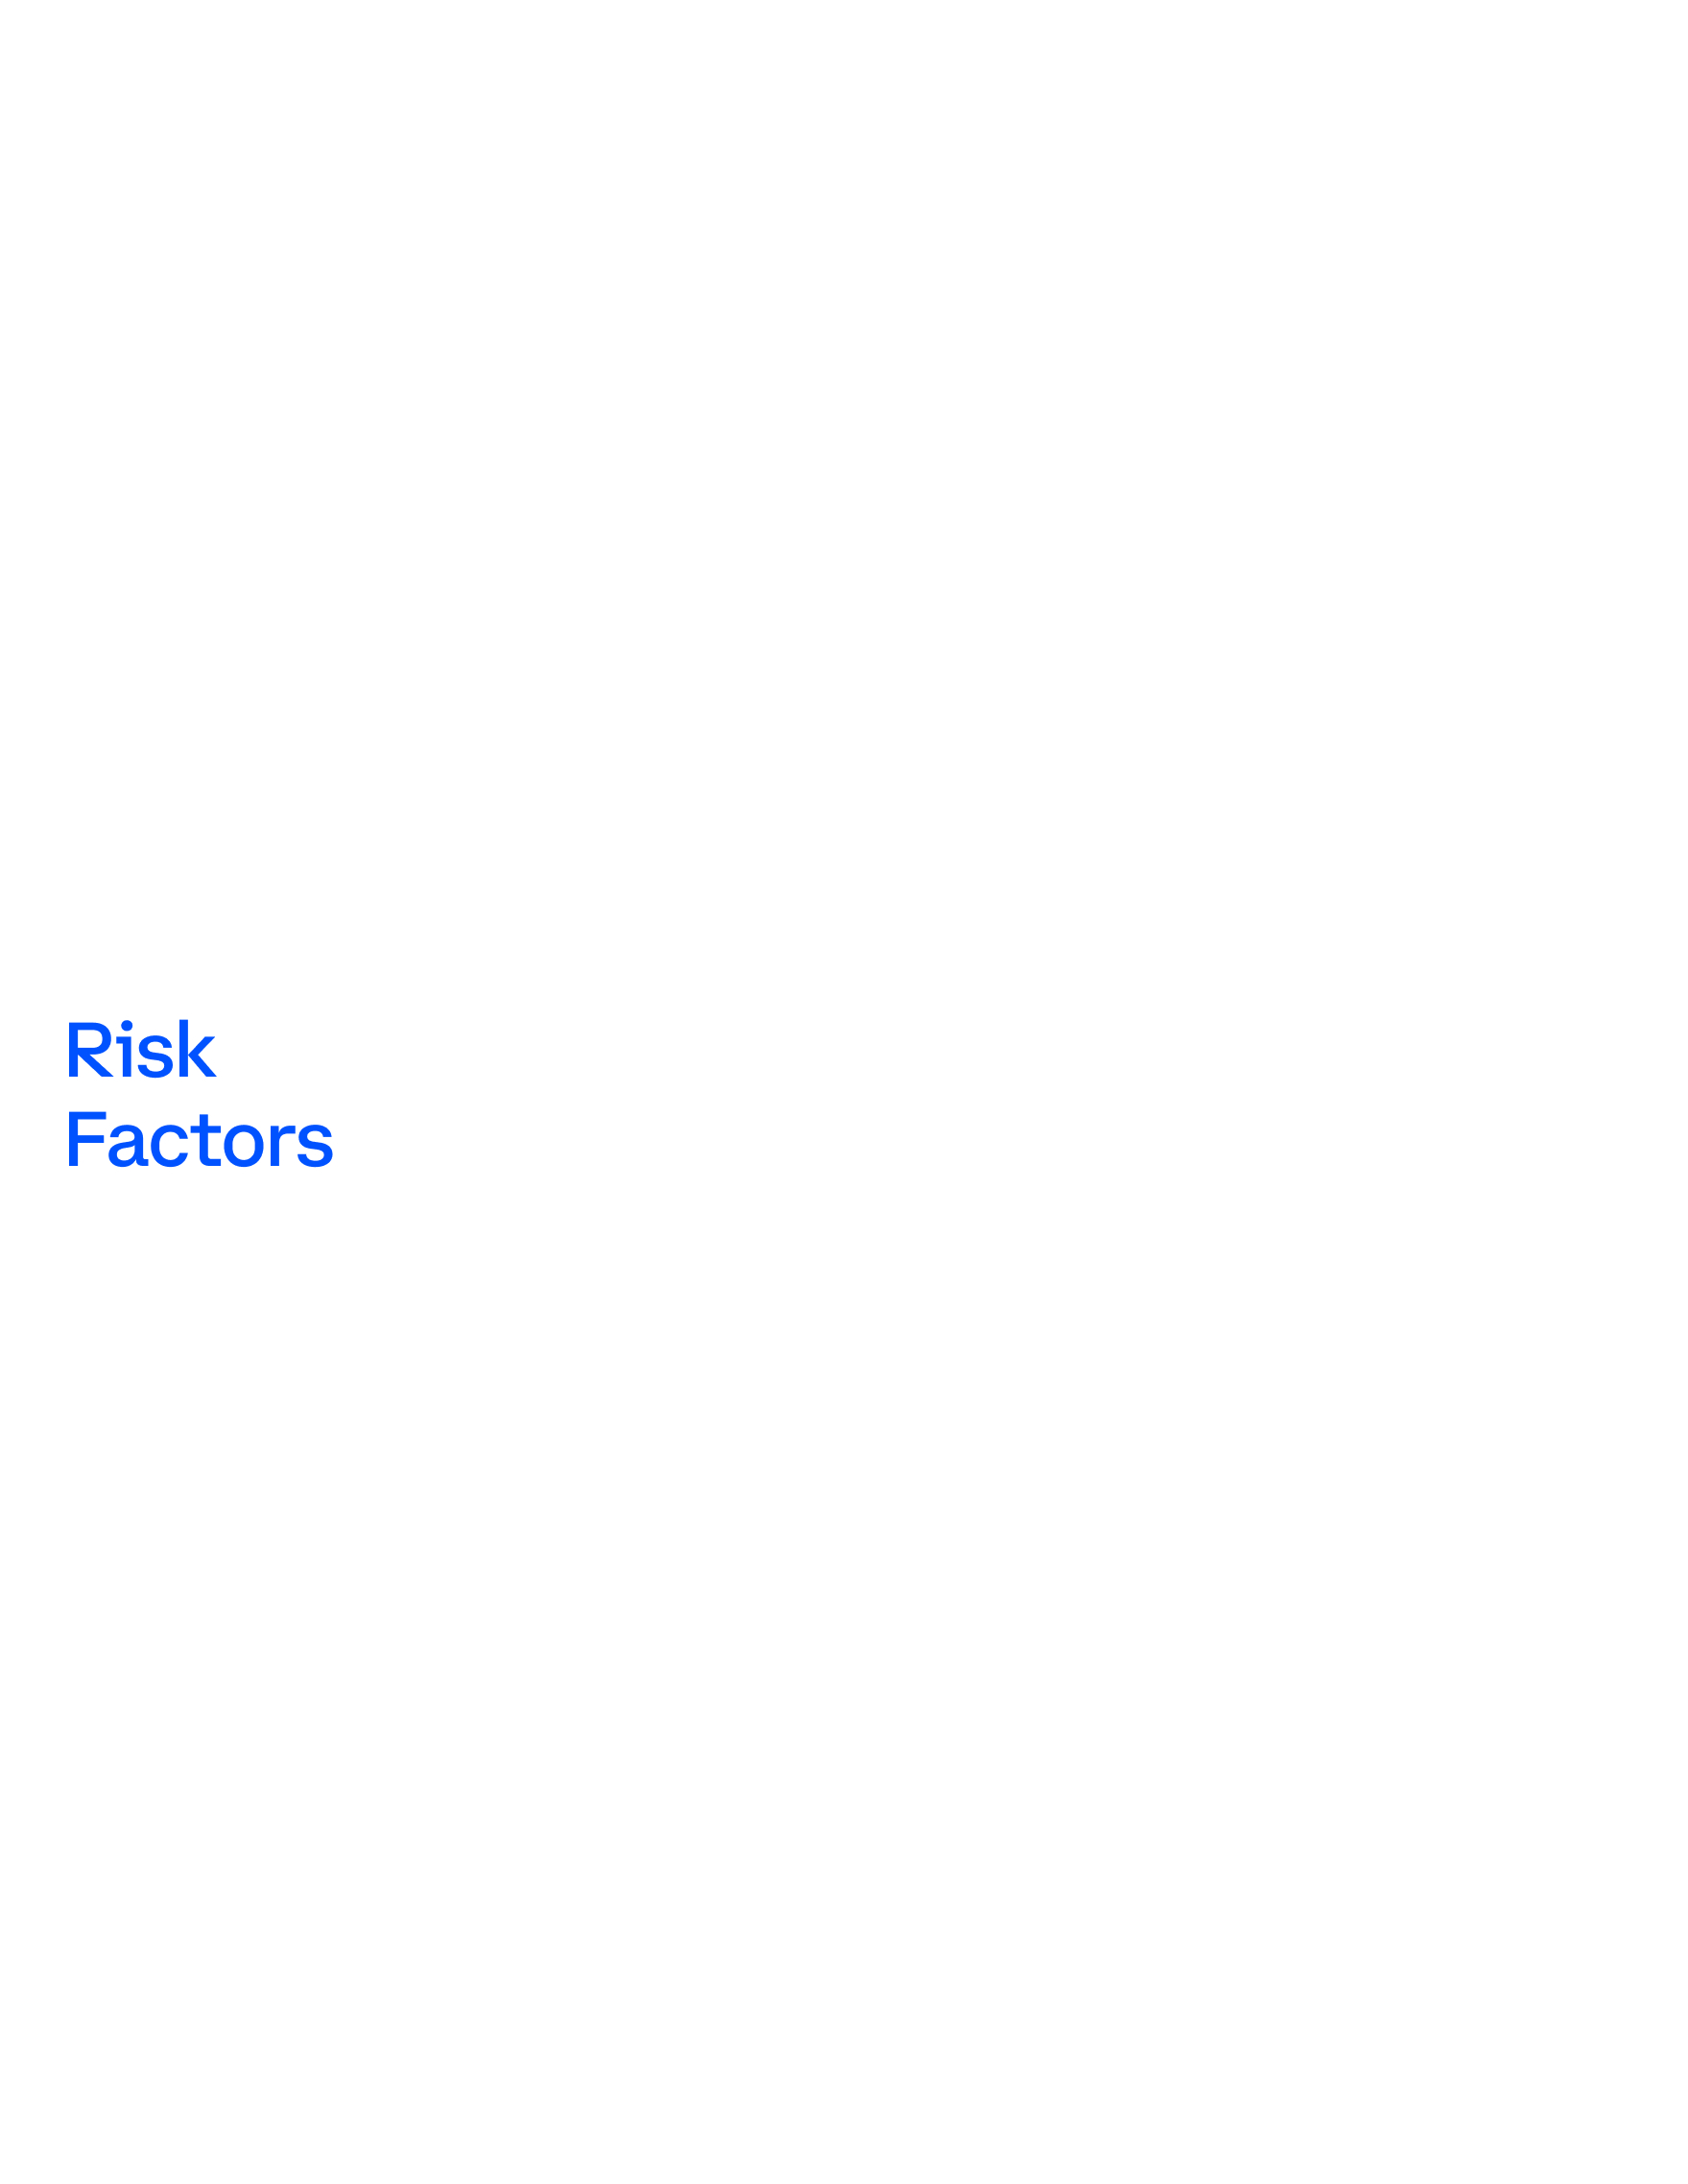 riskfactors1a1a.jpg